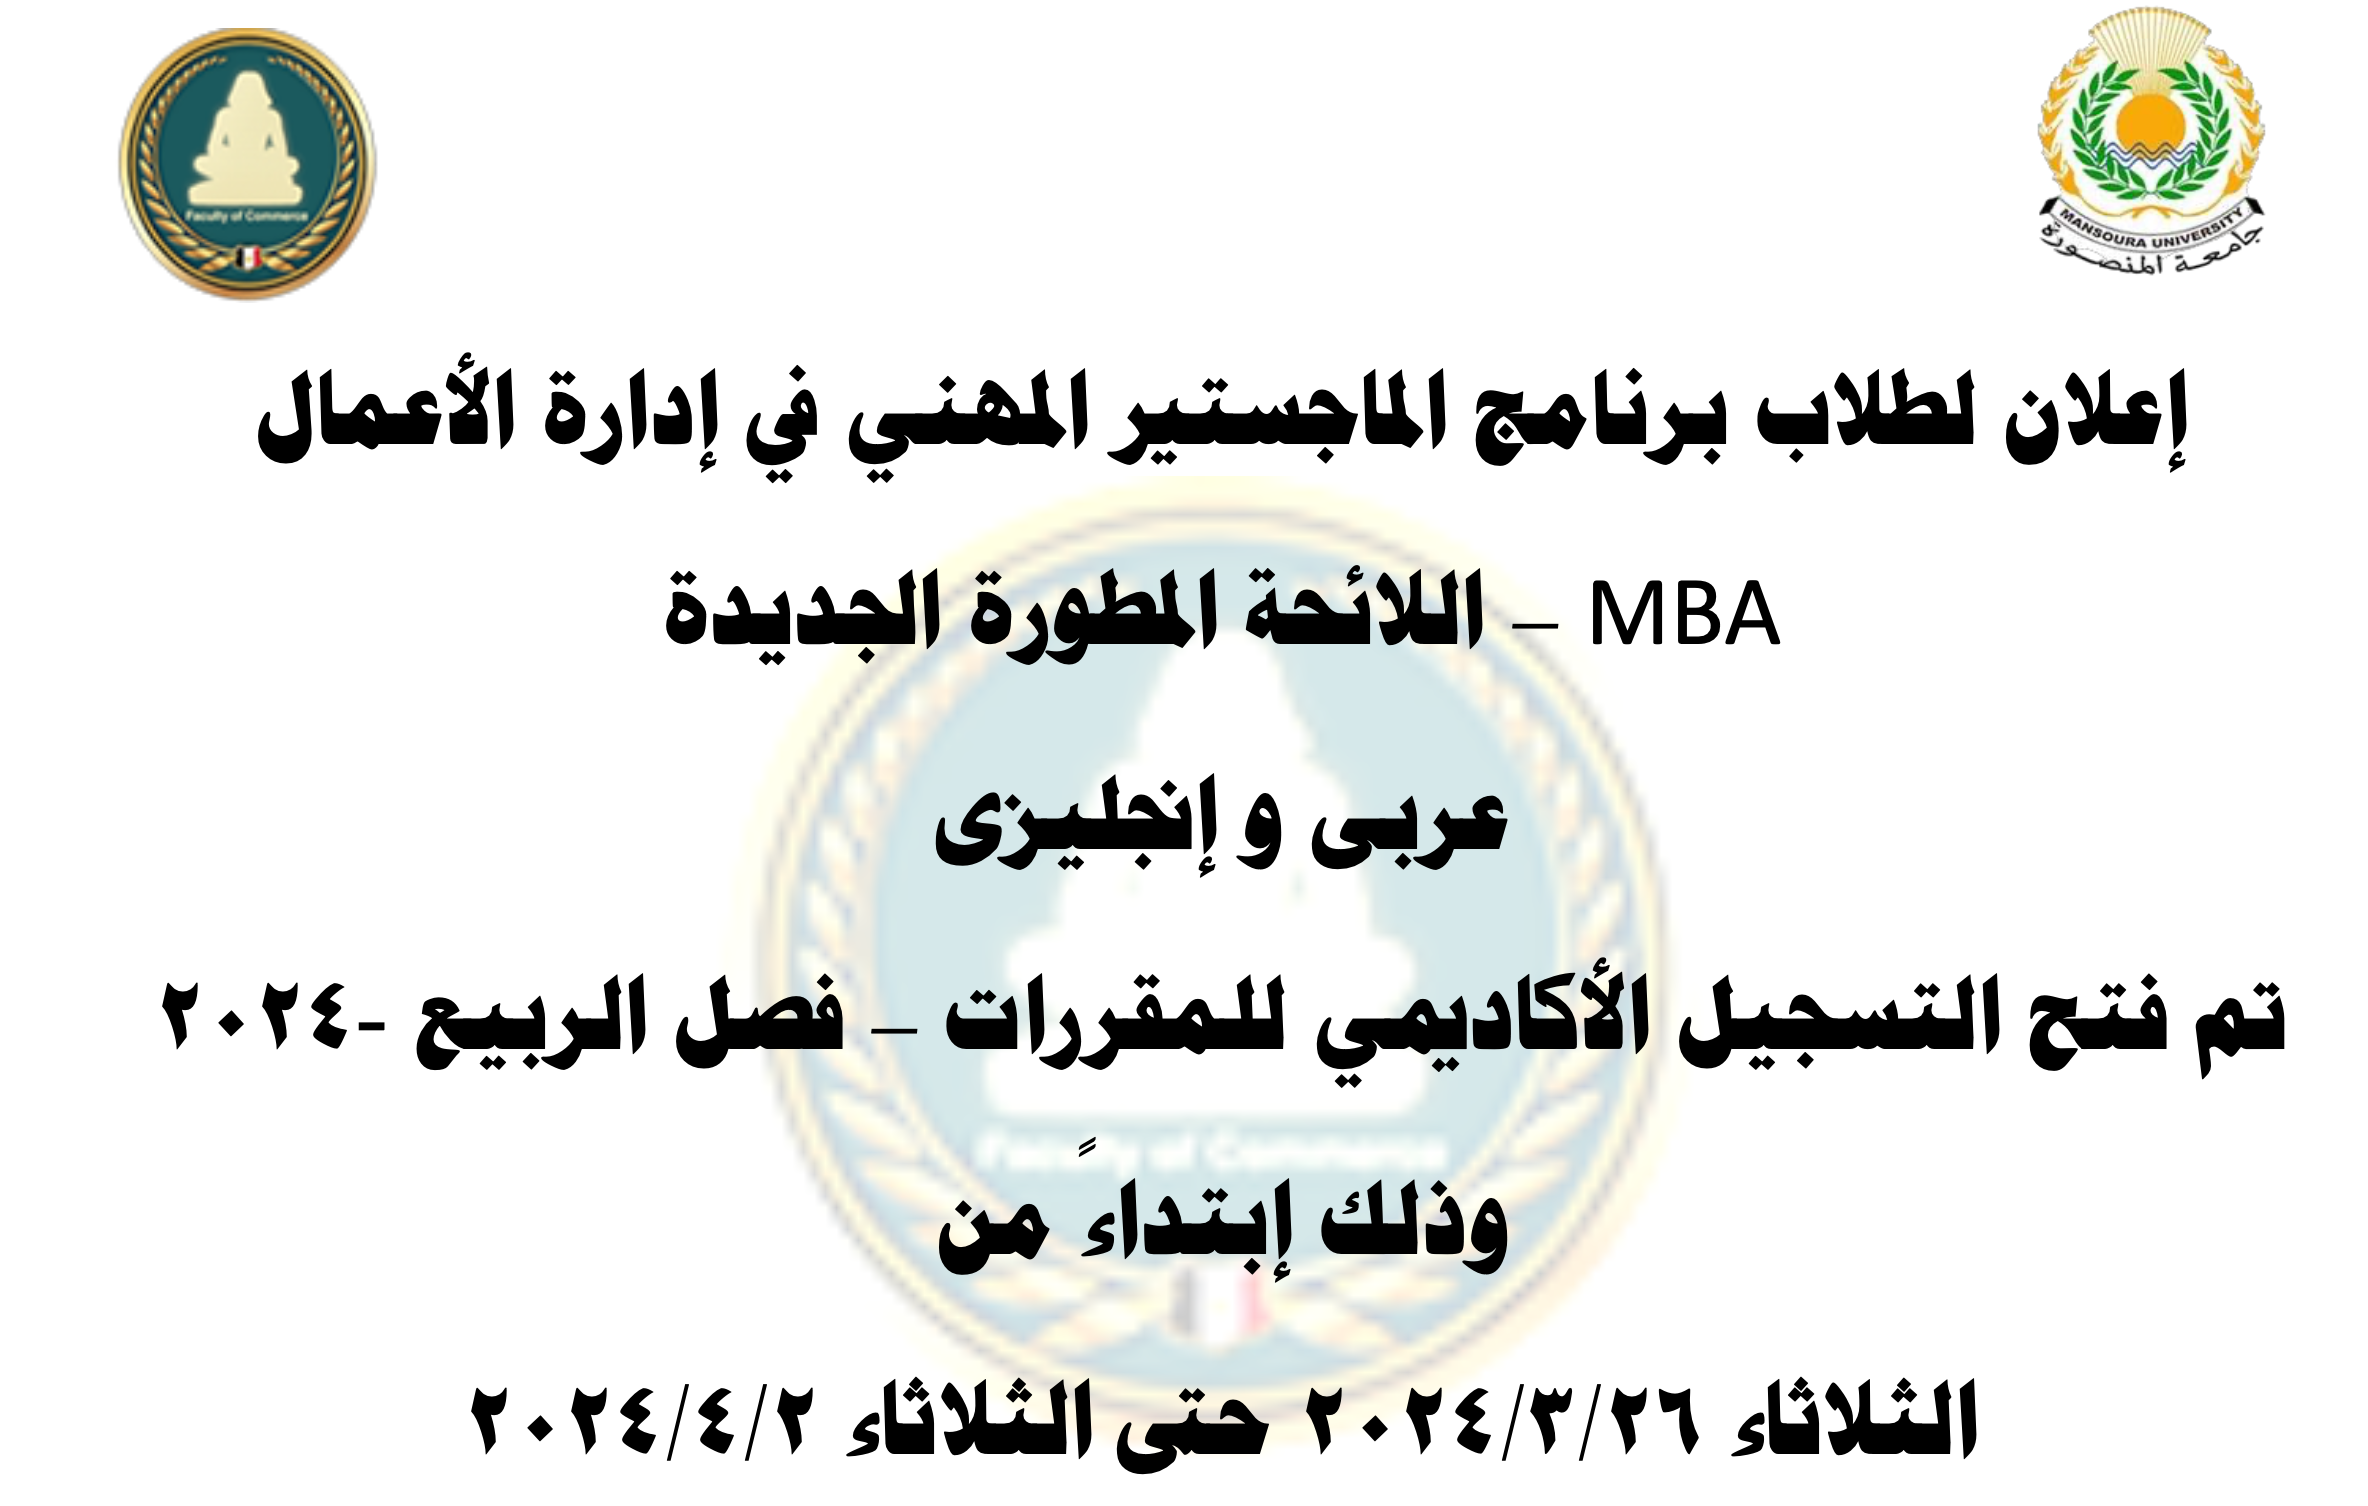 إعلان لطلاب برنامج الماجستير المهني في إدارة الأعمال MBA – اللائحة المطورة الجديدة عربى و إنجليزى